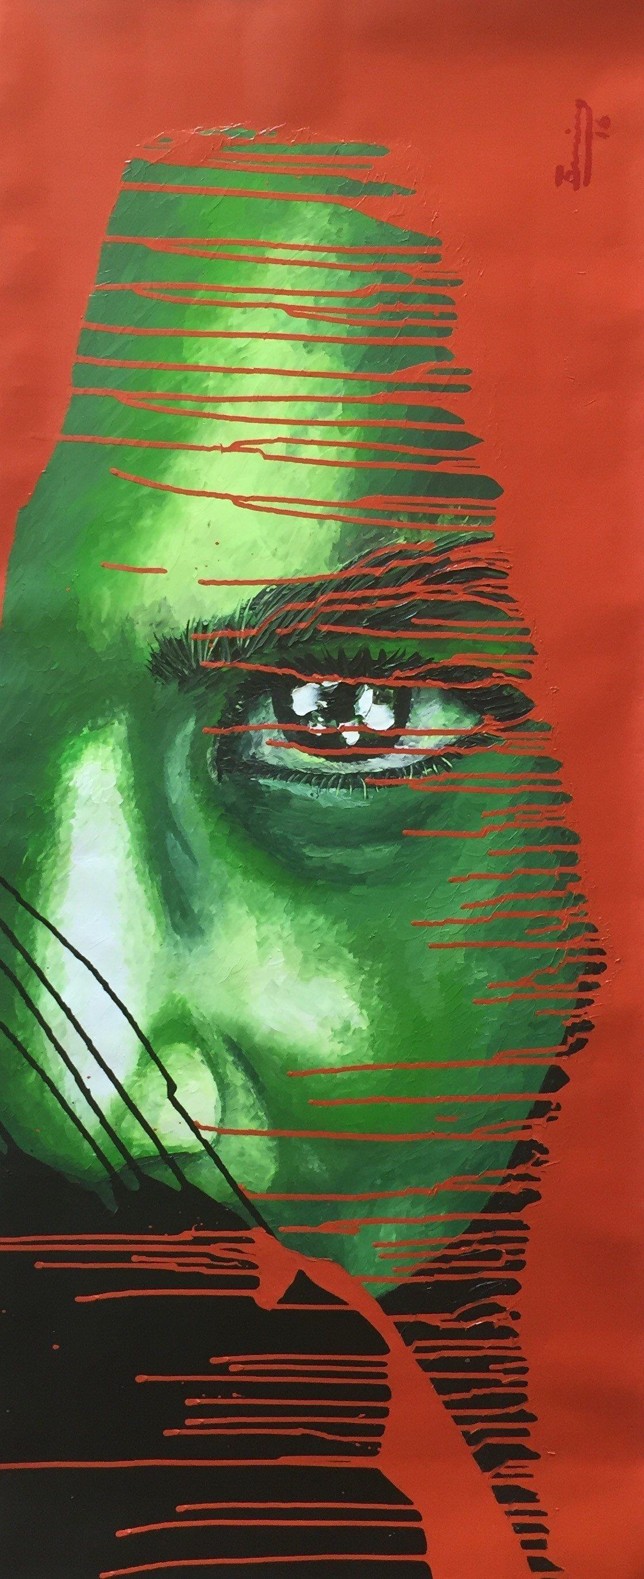 Irving Torres, Lore, Mischtechnik auf Leinwand, 56 x 135 cm, 2016